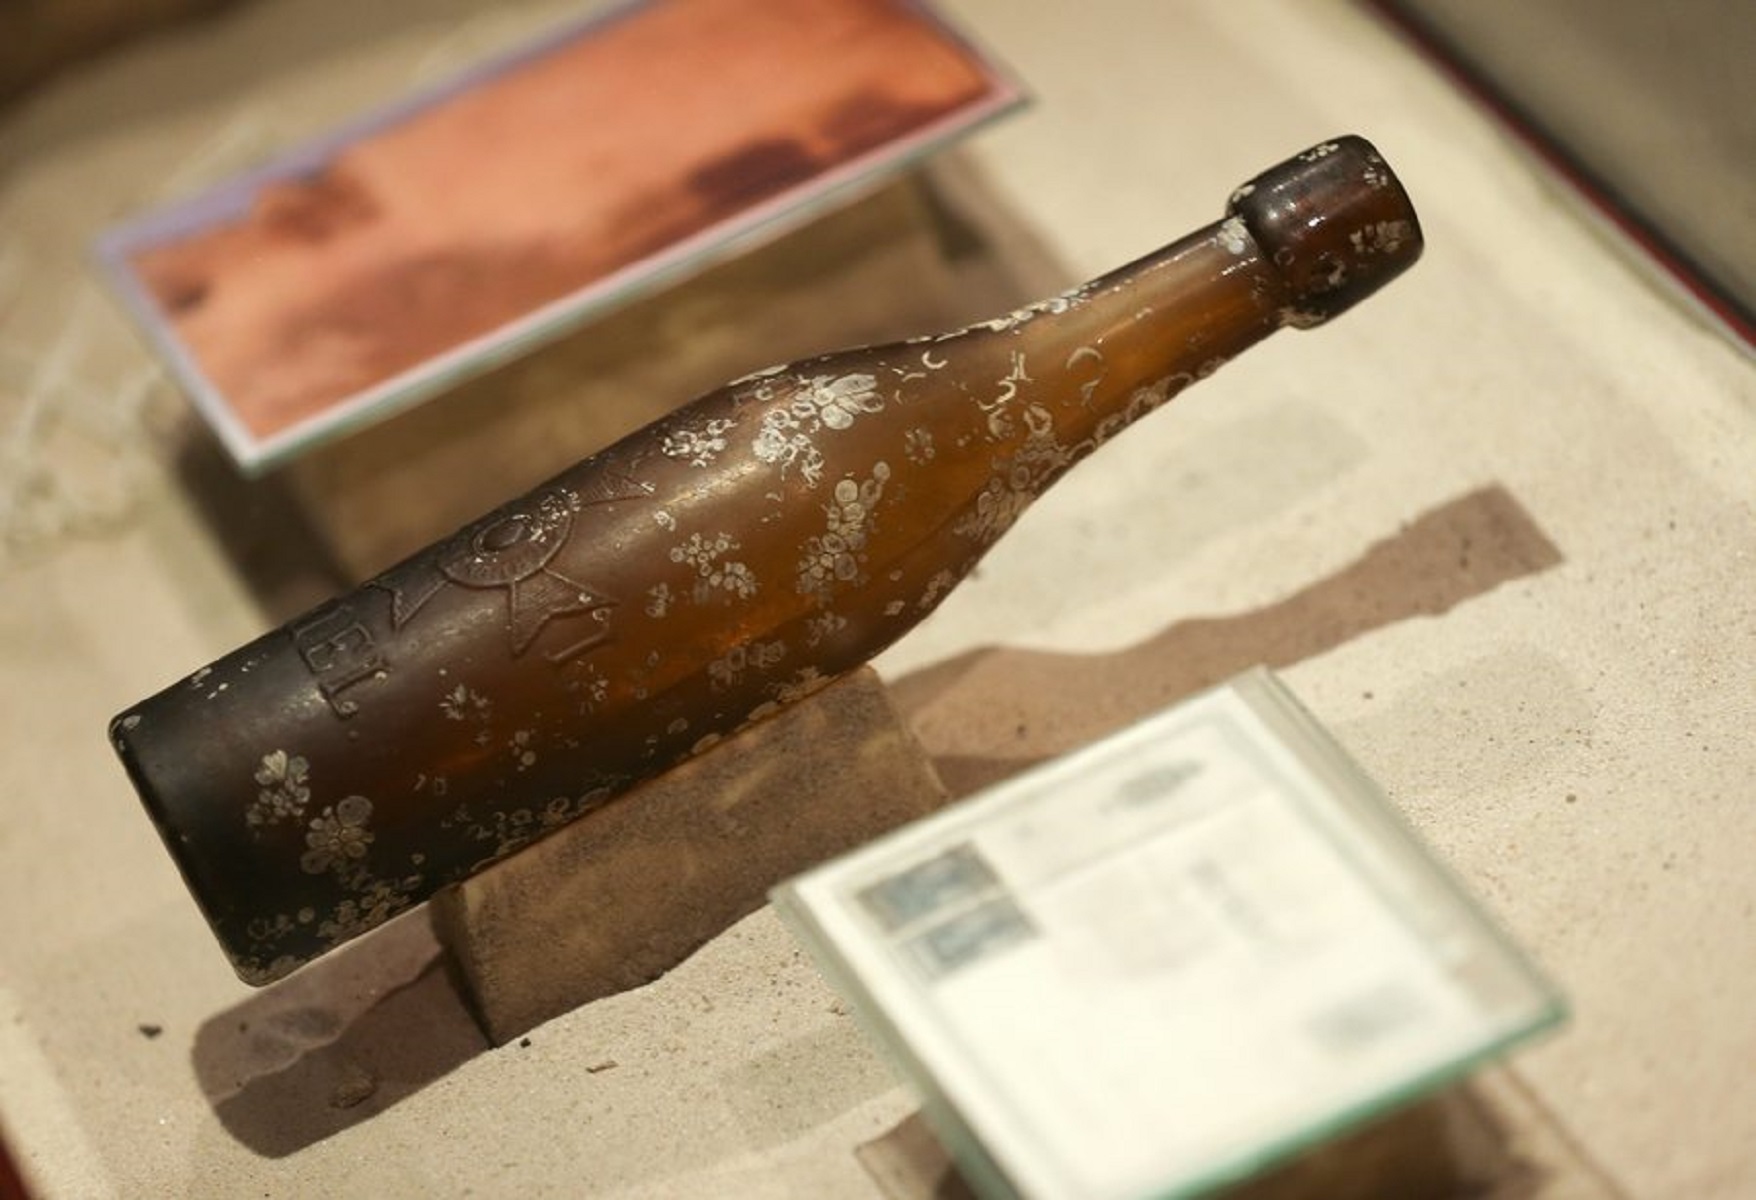 Το γράμμα στο σφραγισμένο μπουκάλι ταξίδευε 50 χρόνια στη θάλασσα!